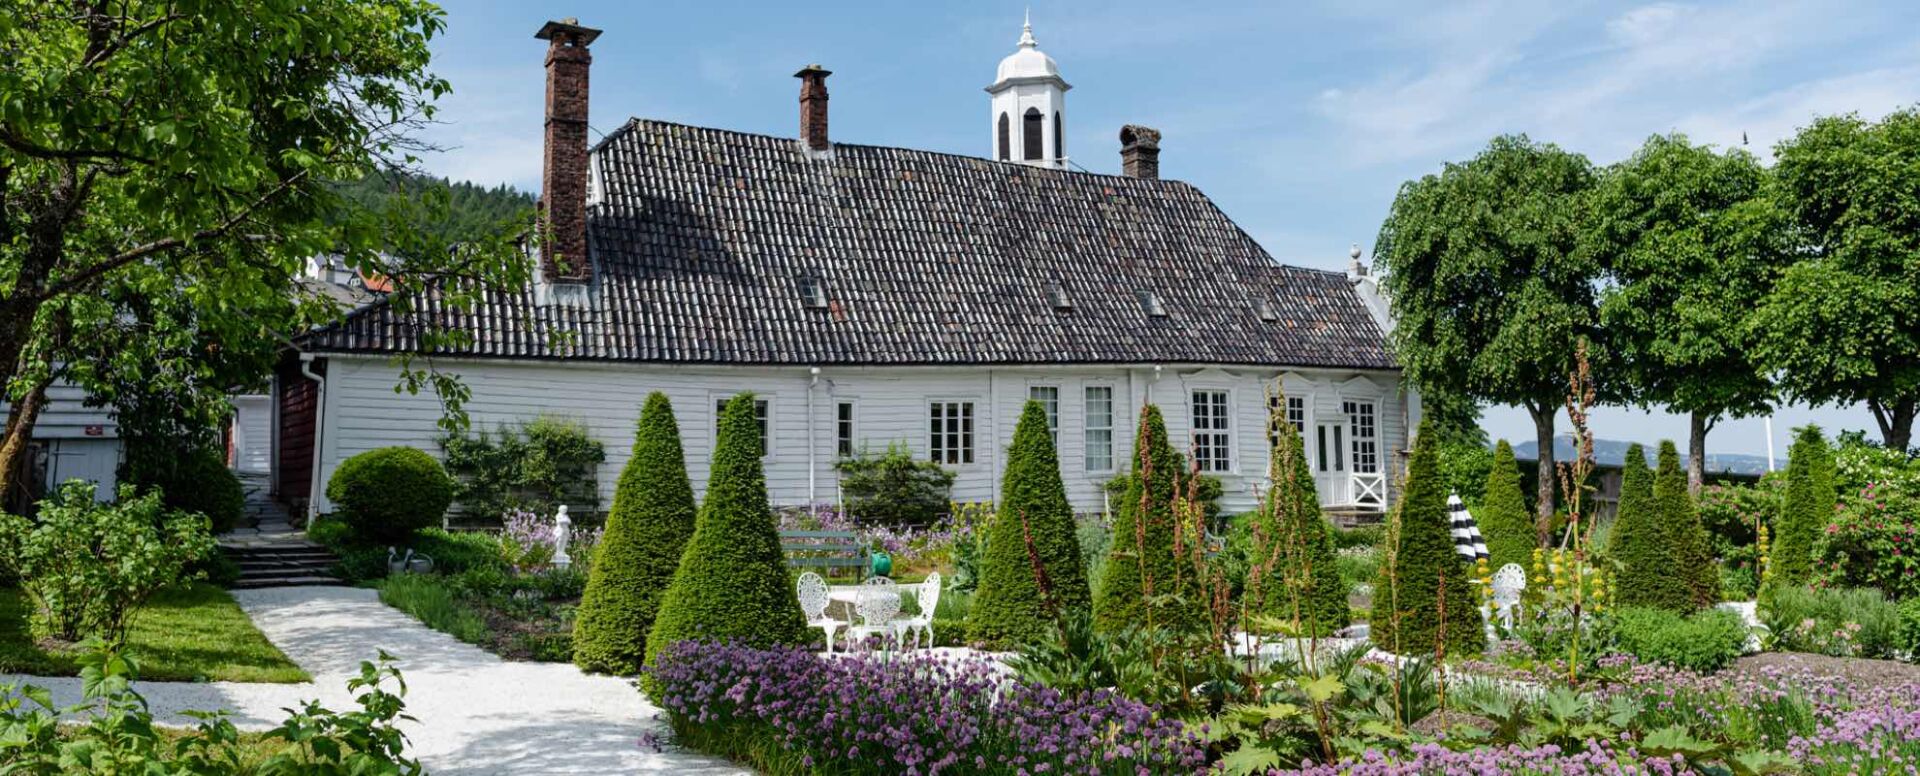 1700-tallshagen på Damsgård Hovedgård, Bymuseet i Bergen